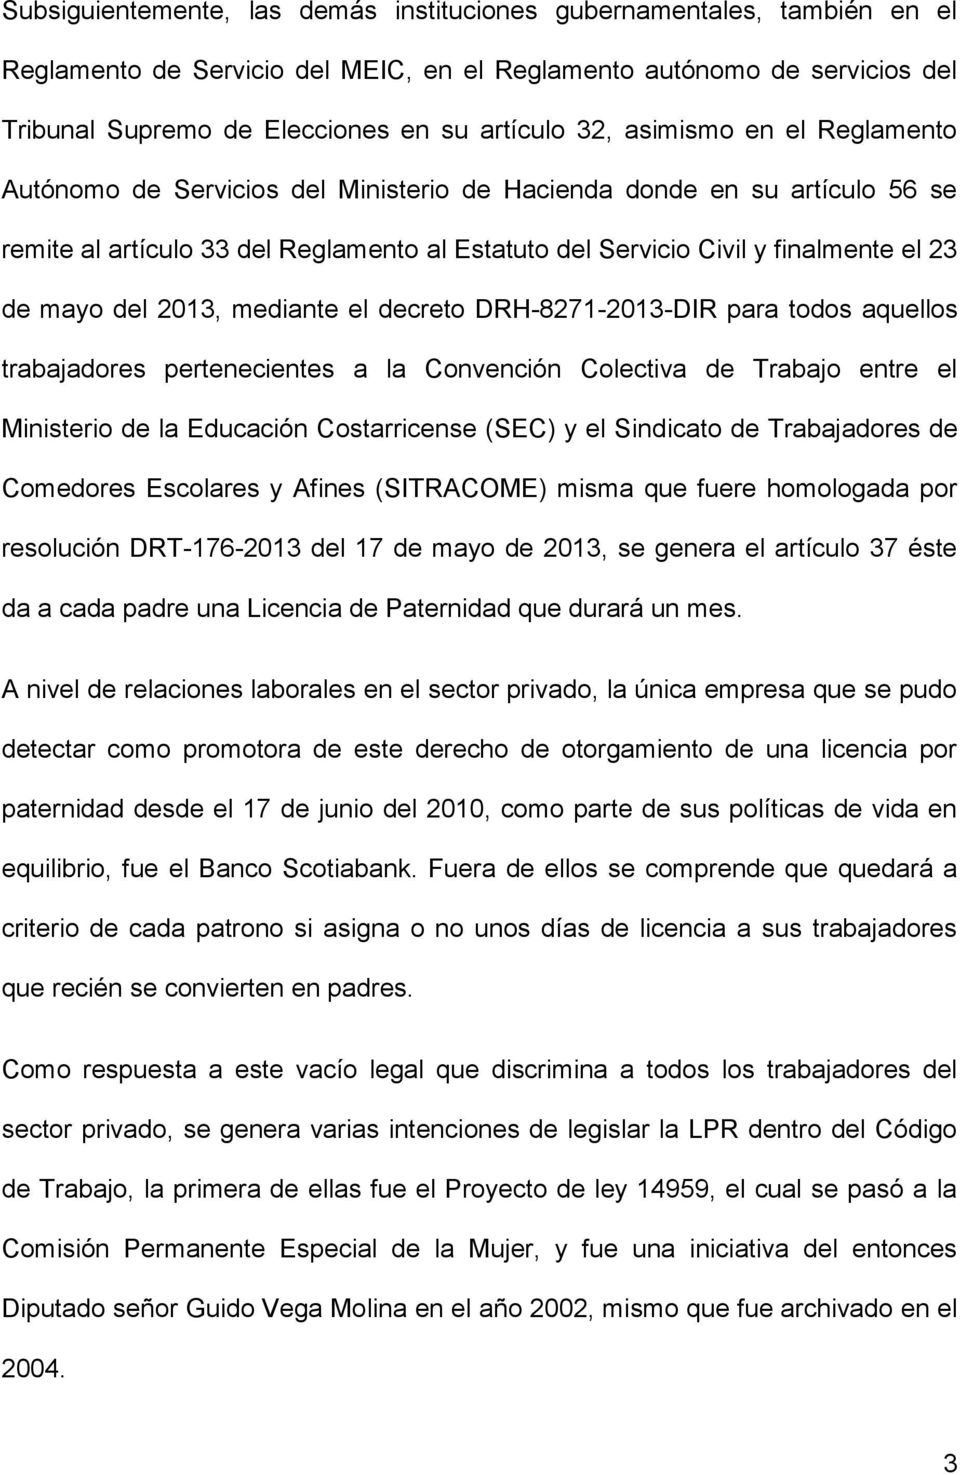 del 2013, mediante el decreto DRH-8271-2013-DIR para todos aquellos trabajadores pertenecientes a la Convención Colectiva de Trabajo entre el Ministerio de la Educación Costarricense (SEC) y el